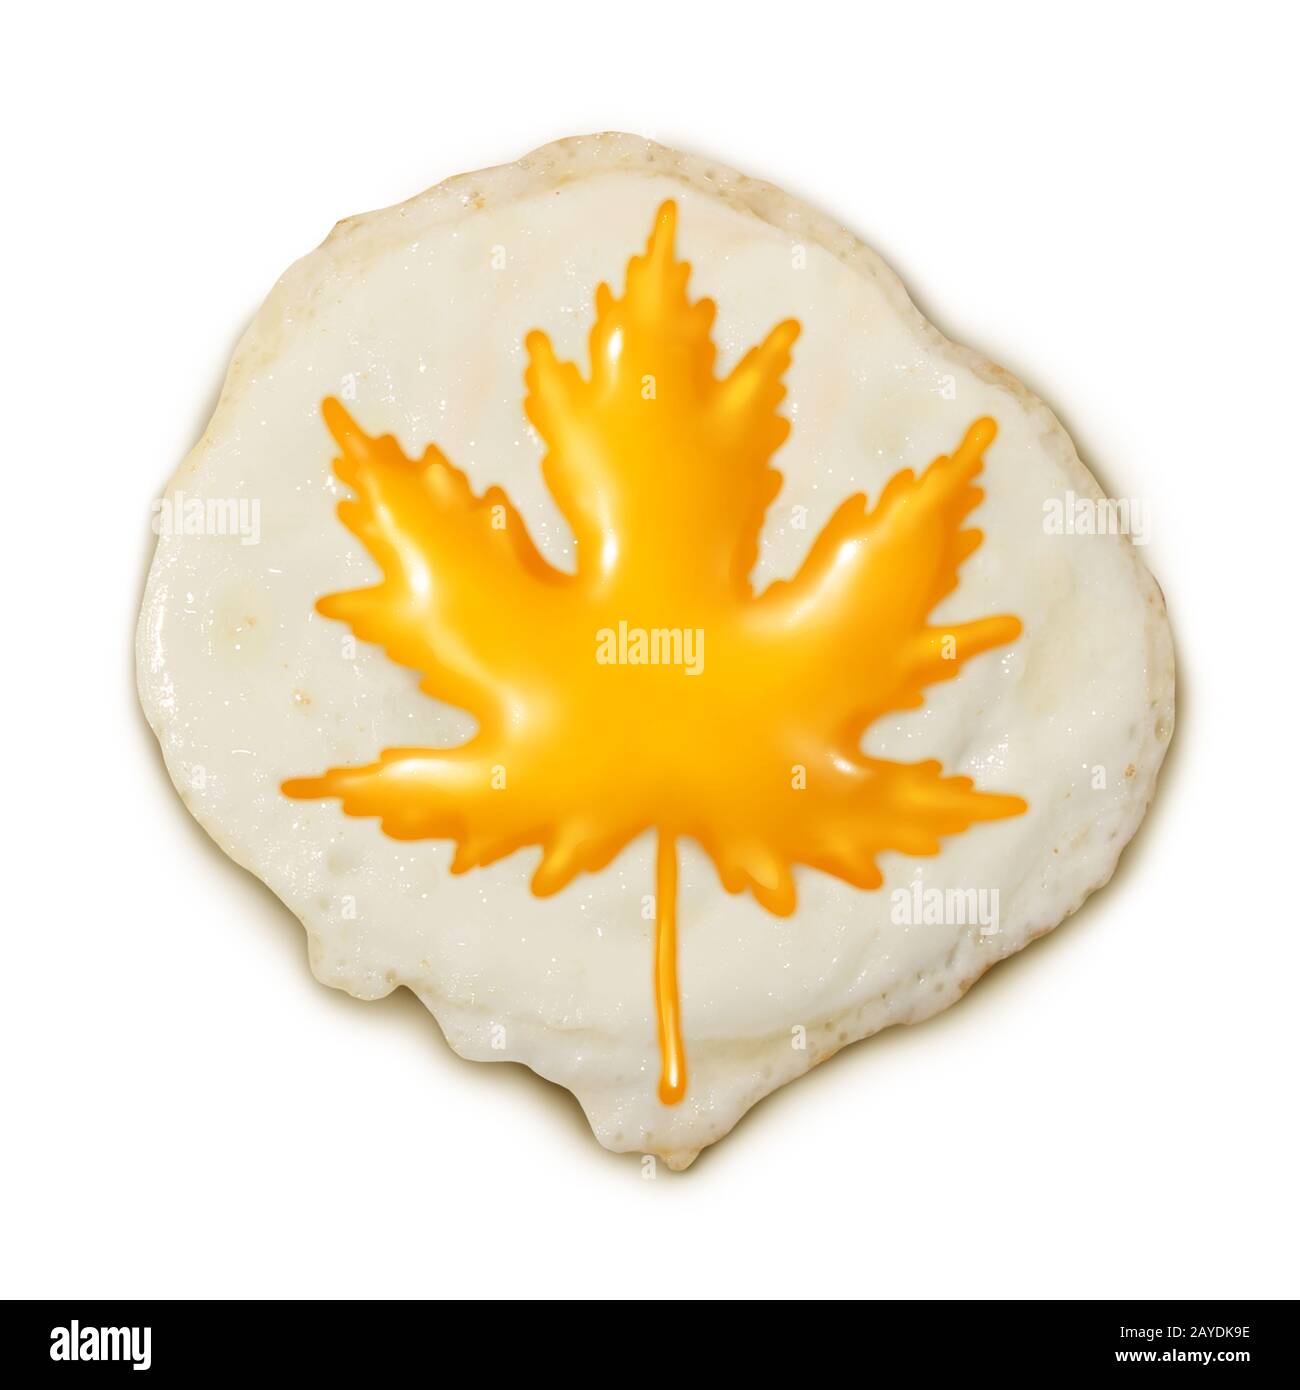 Kanadische Eierhaltung und morgendliche Frühstückseier mit Ahorn-Blattform als Bio-Lebensmittel aus Kanada im 3D-Illustrationsstil. Stockfoto